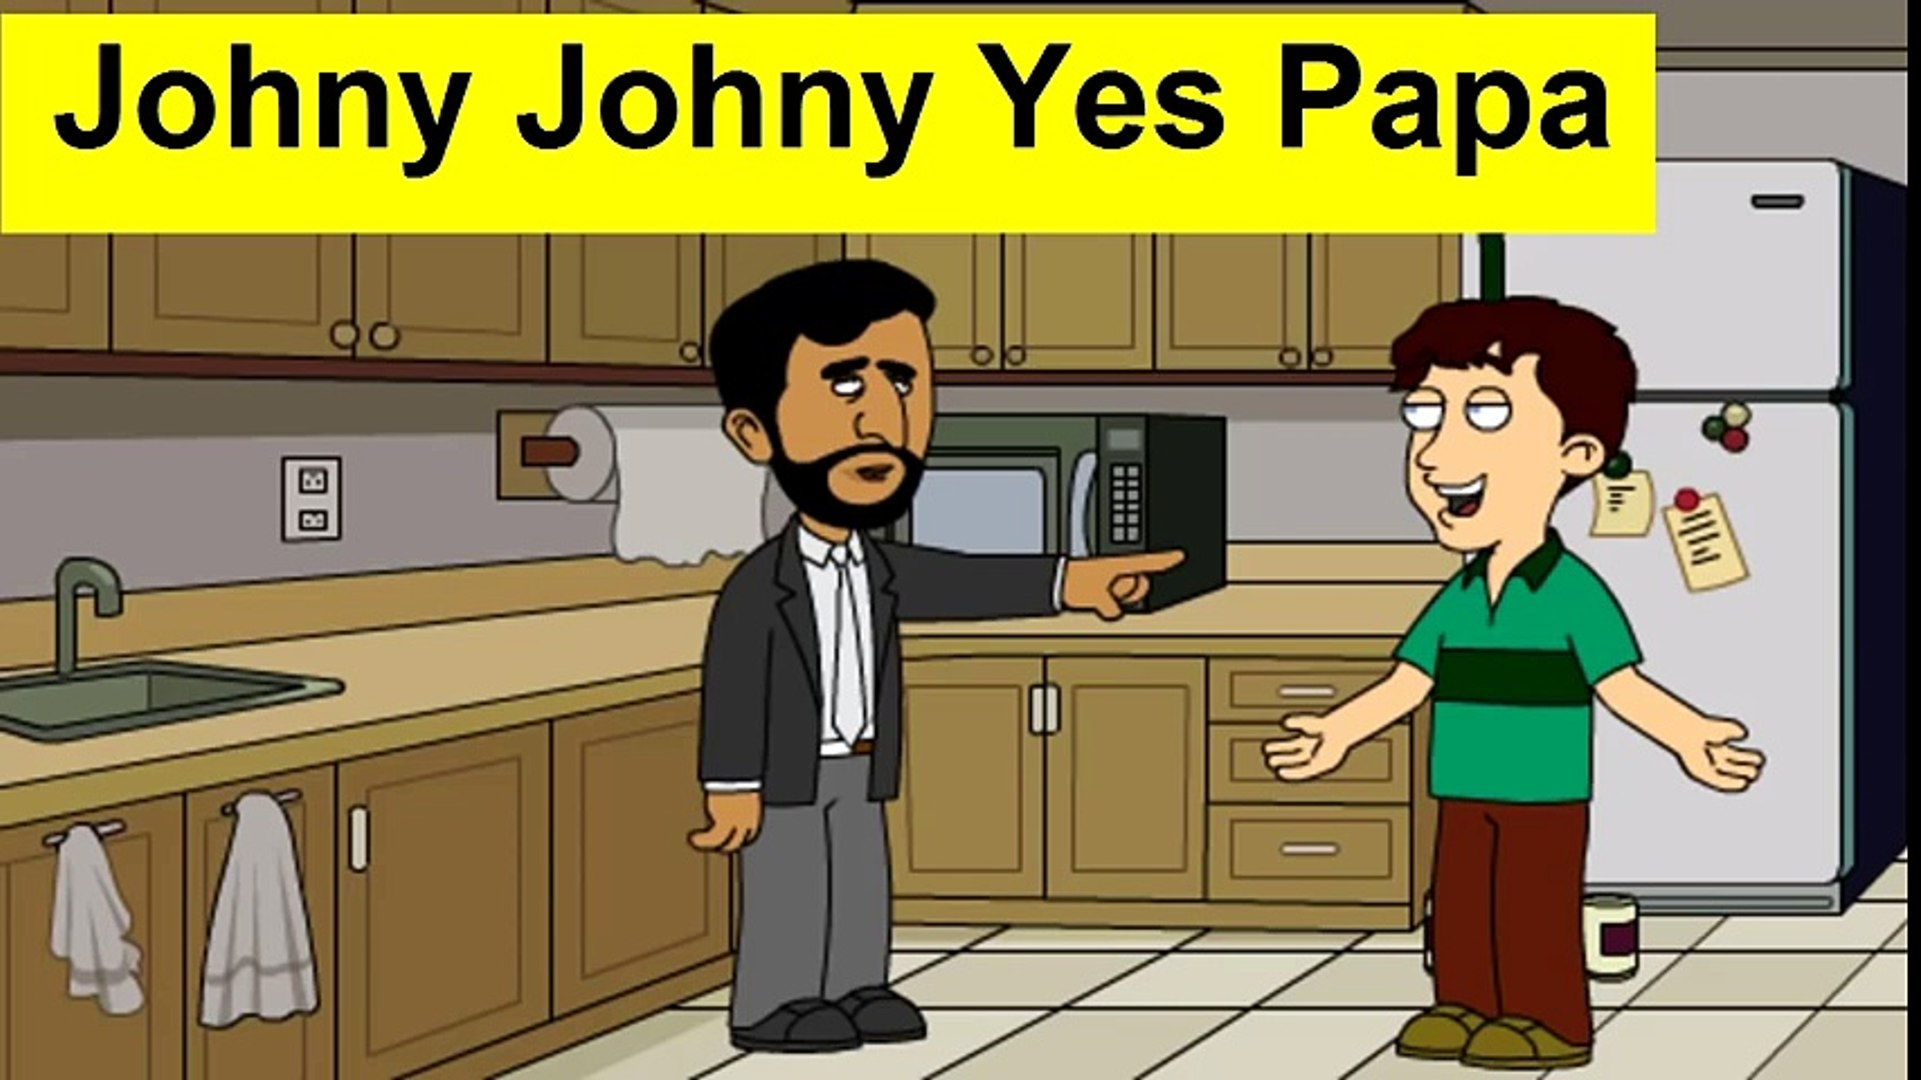 جوني جوني يس بابا - رياض الاطفال Johny Johny Yes Papa - video Dailymotion